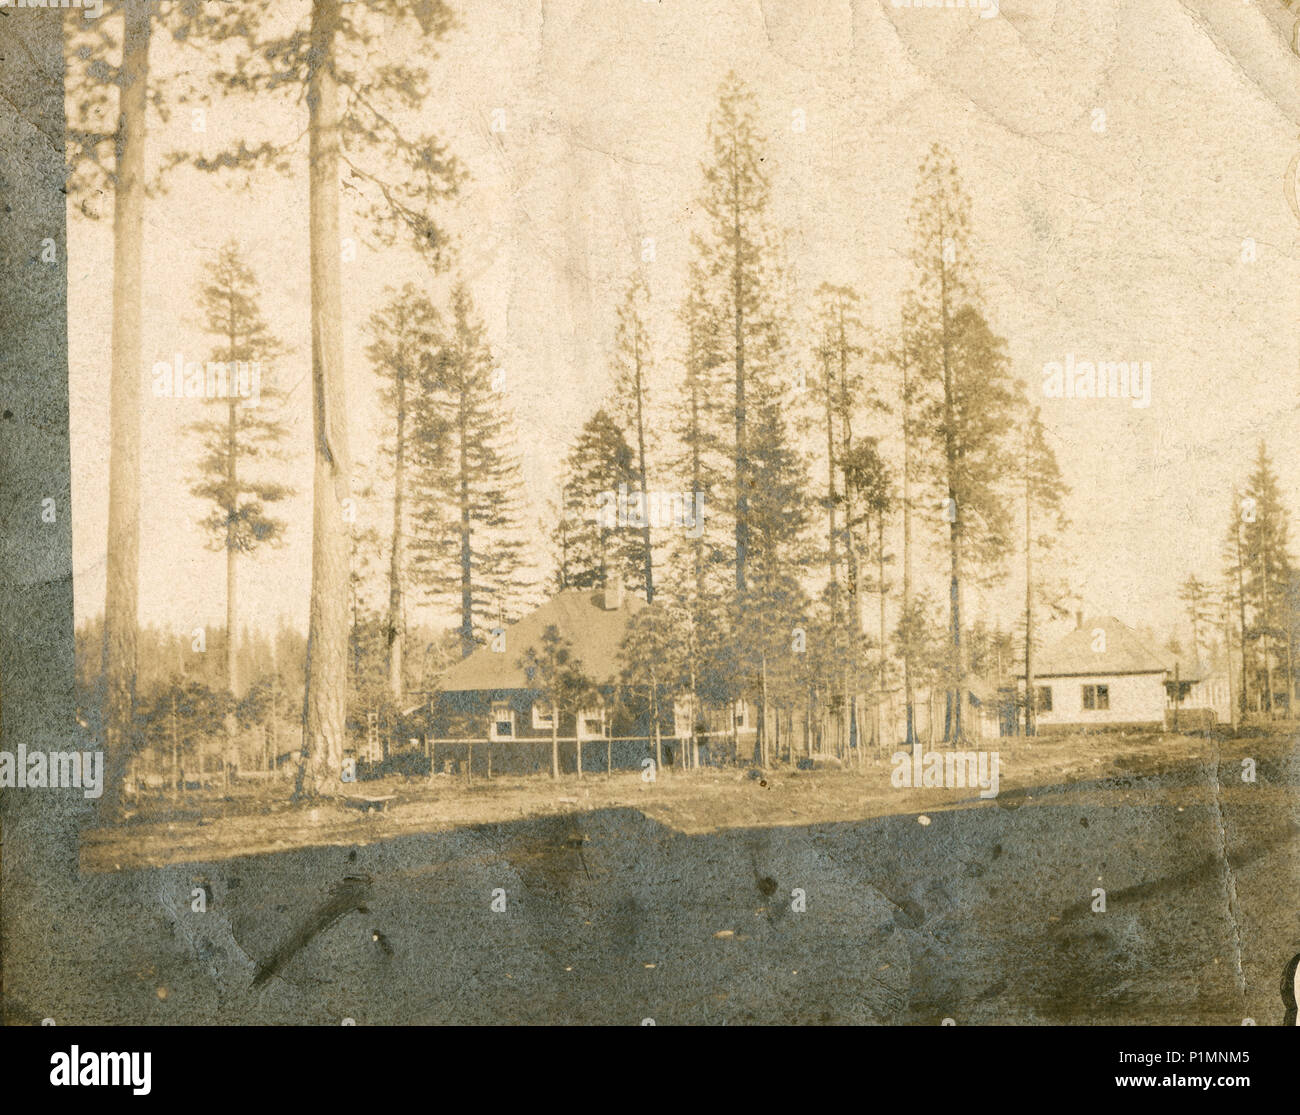 Antico risalente al 1910 fotografia, la sig.ra Newcomb il Bungalow nella città di Stirling, California. La città di Stirling fu fondata nel 1903 dal Diamond Match Company di Barberton, Ohio, come un centro per la lavorazione di legname tagliato dai boschi circostanti. Fonte: fotografia originale. Foto Stock